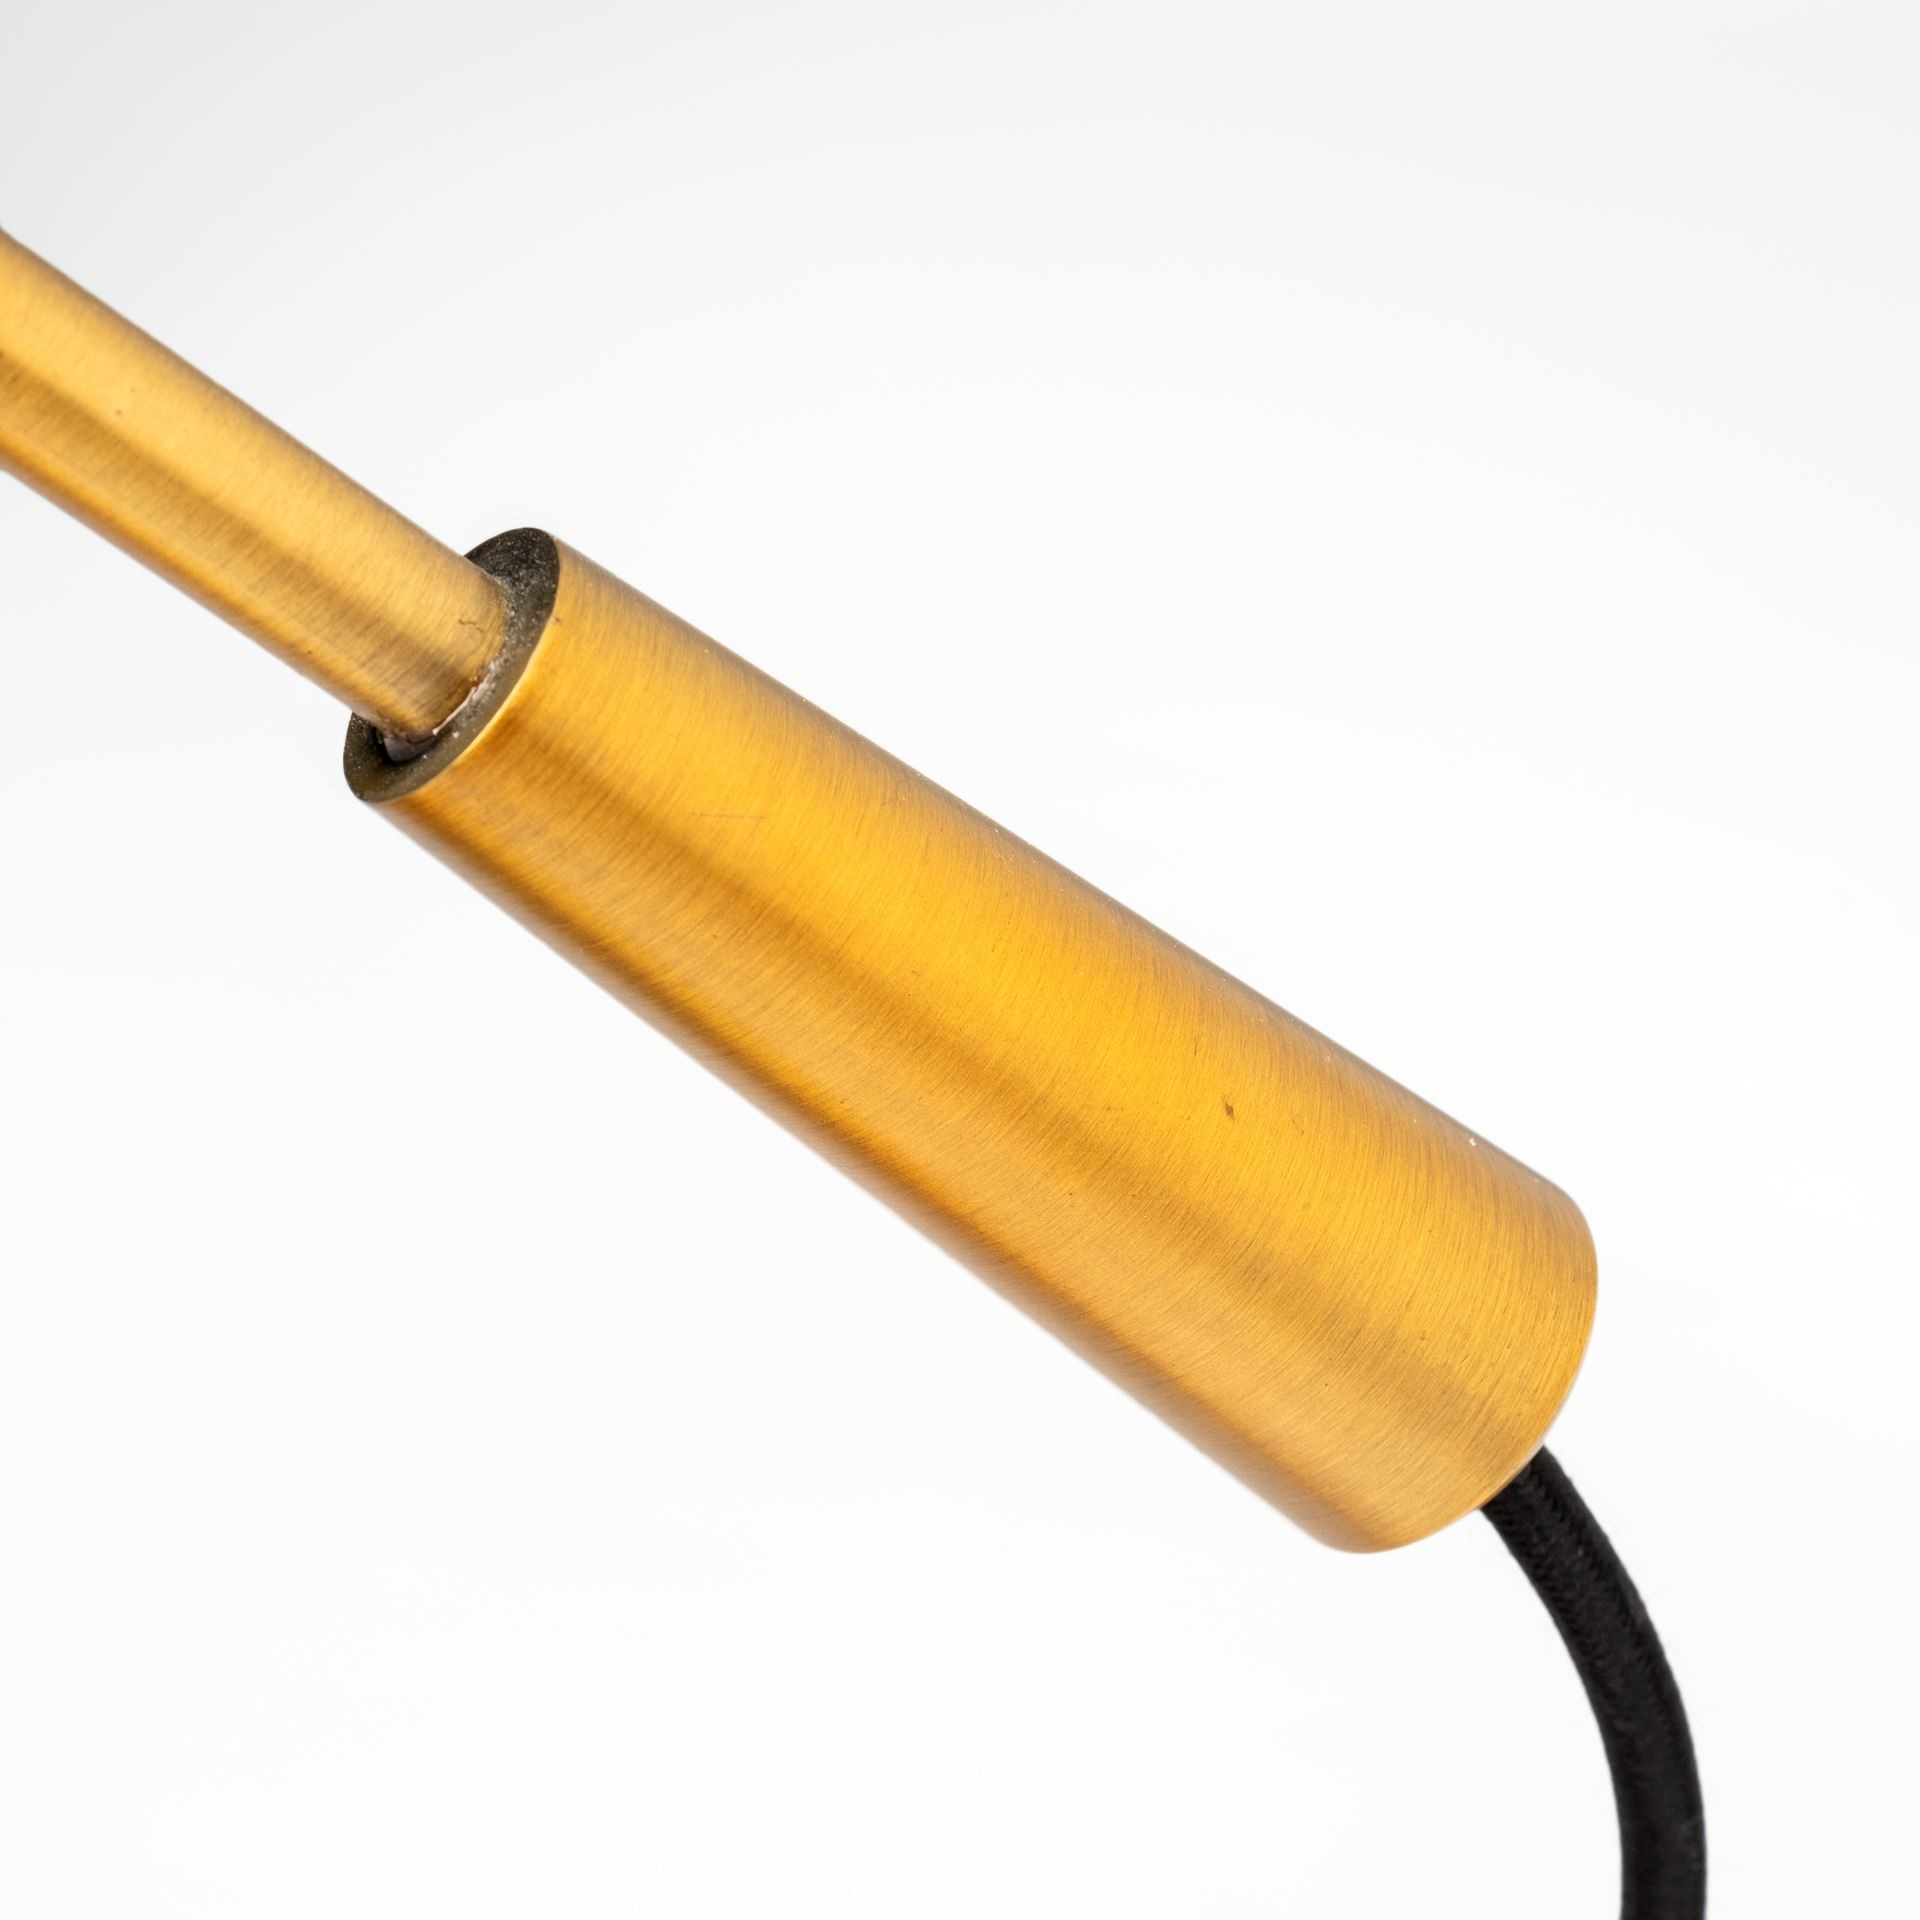 Sleek Golden Cone Adjustable Desk Lamp - Higher Gallery